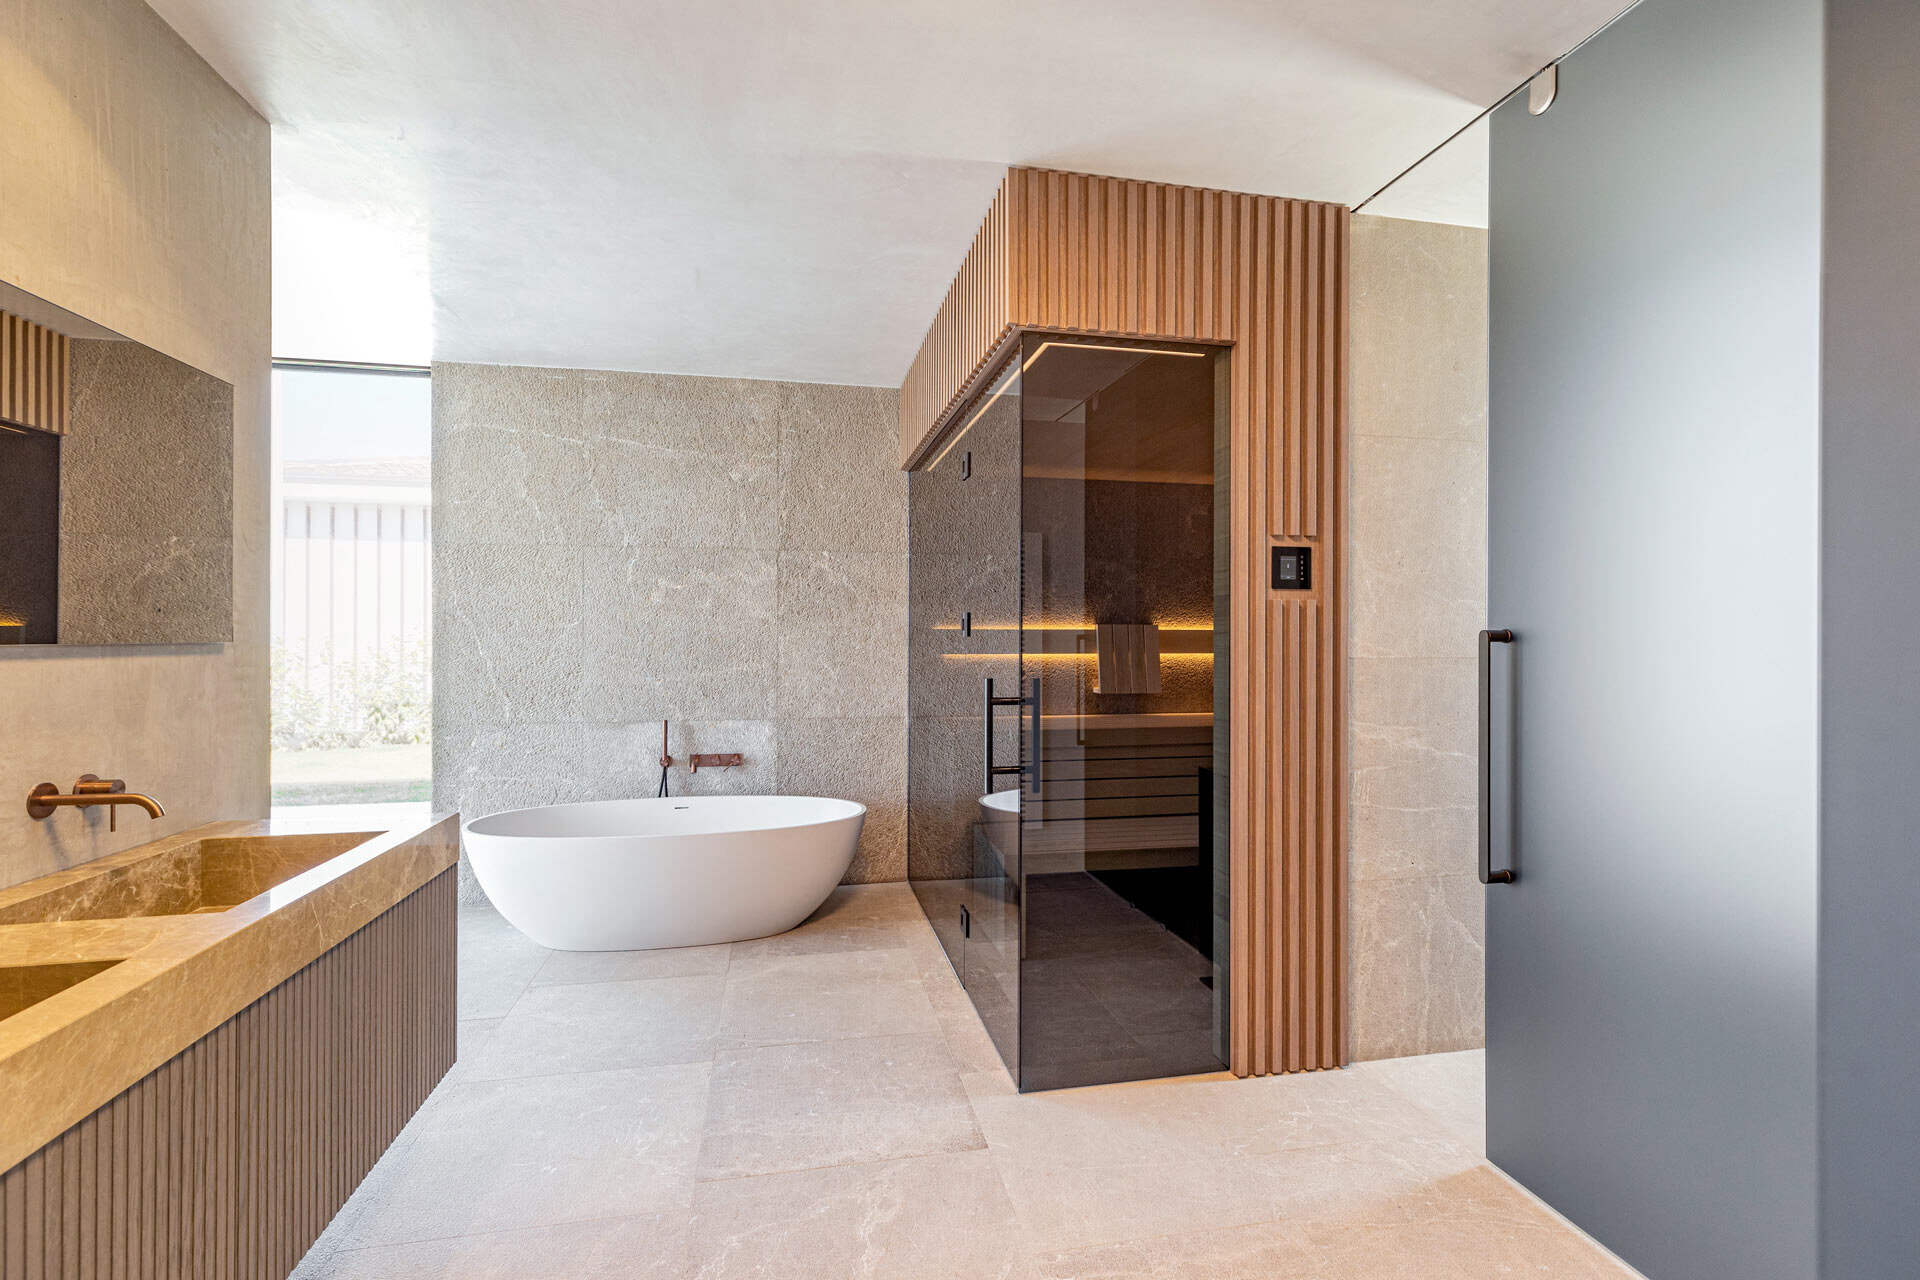 Individuell gestaltete Designsauna mit getönter Frontverglasung, einer Außenverlleidung aus getönten Holzleisten, in einem luxuriösen Badezimmer aus Marmor und Naturstein mit freistehender Badewanne und Waschtisch.